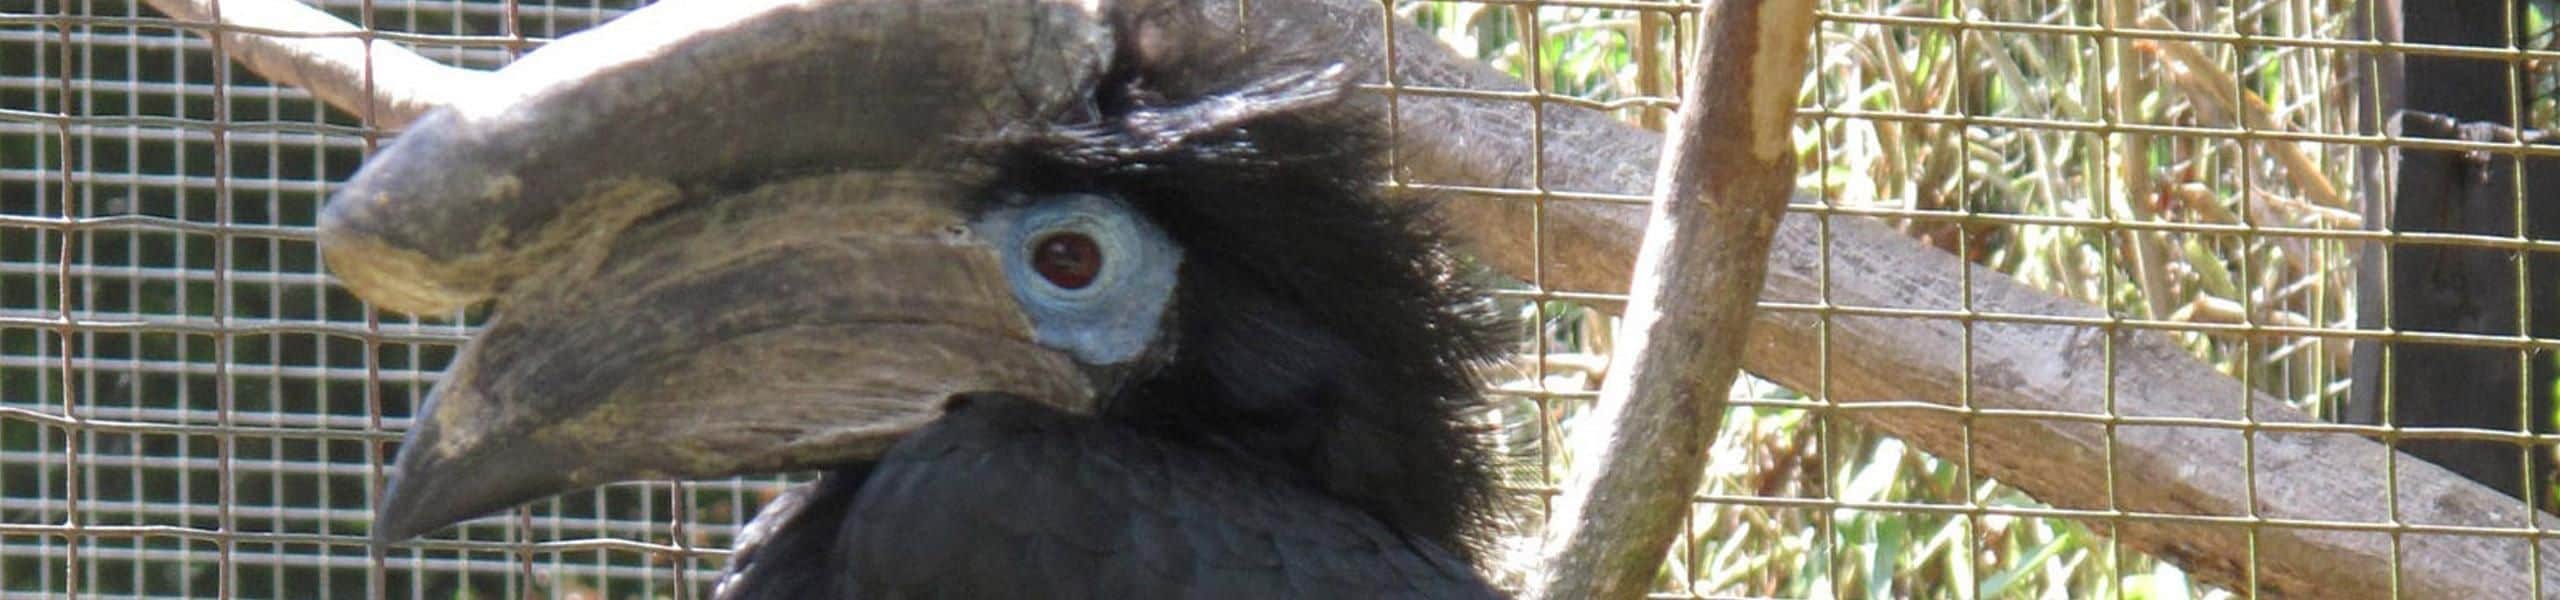 Black-casqued Wattled Hornbill - Ceratogymna atrata | Paultons Park